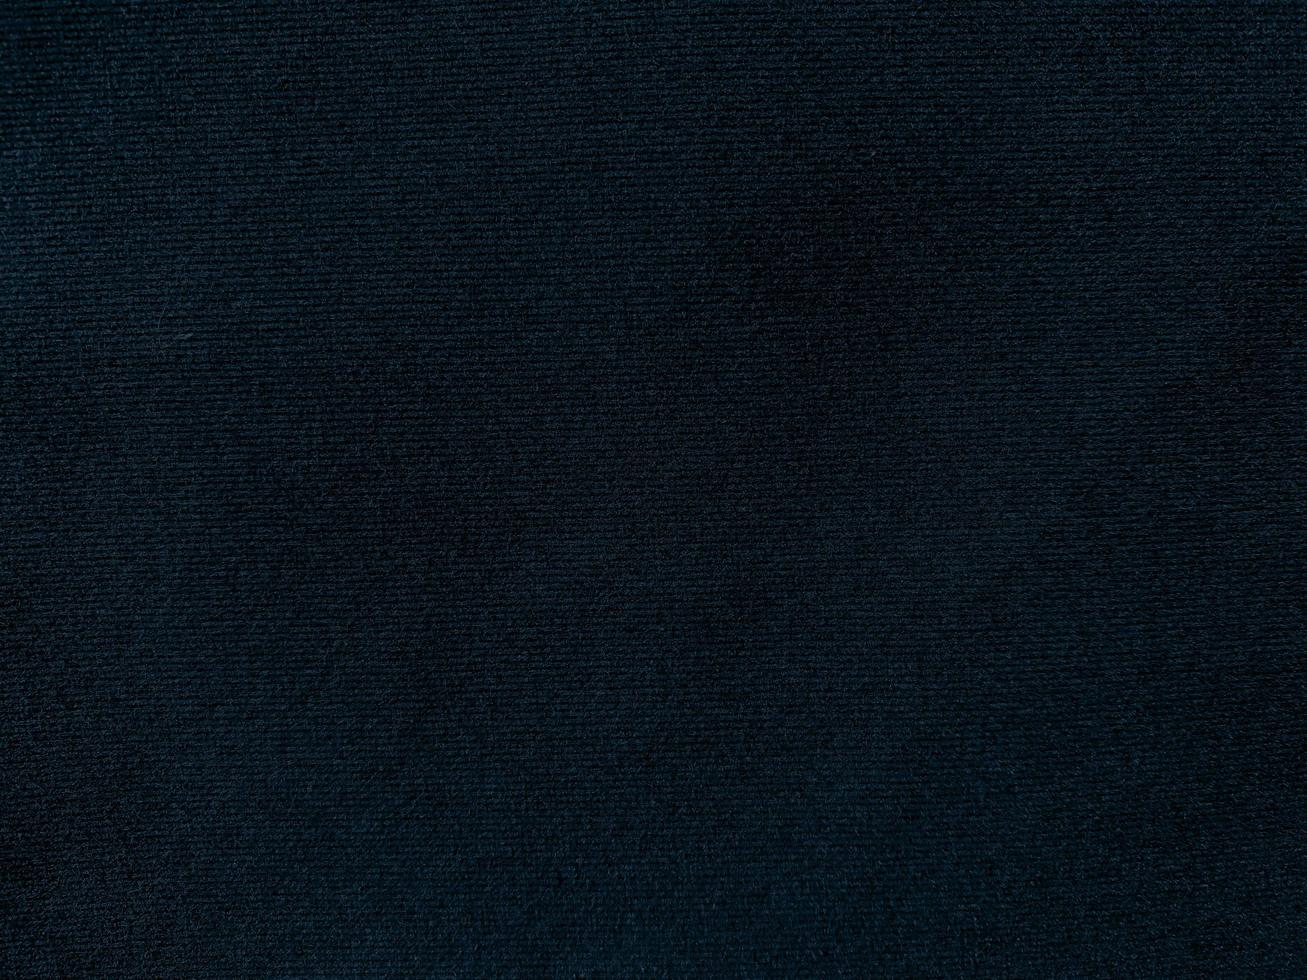 donker blauw fluweel kleding stof structuur net zo achtergrond. leeg blauw kleding stof achtergrond van zacht en glad textiel materiaal. Daar ruimte voor tekst. 15234566 stockfoto bij Vecteezy